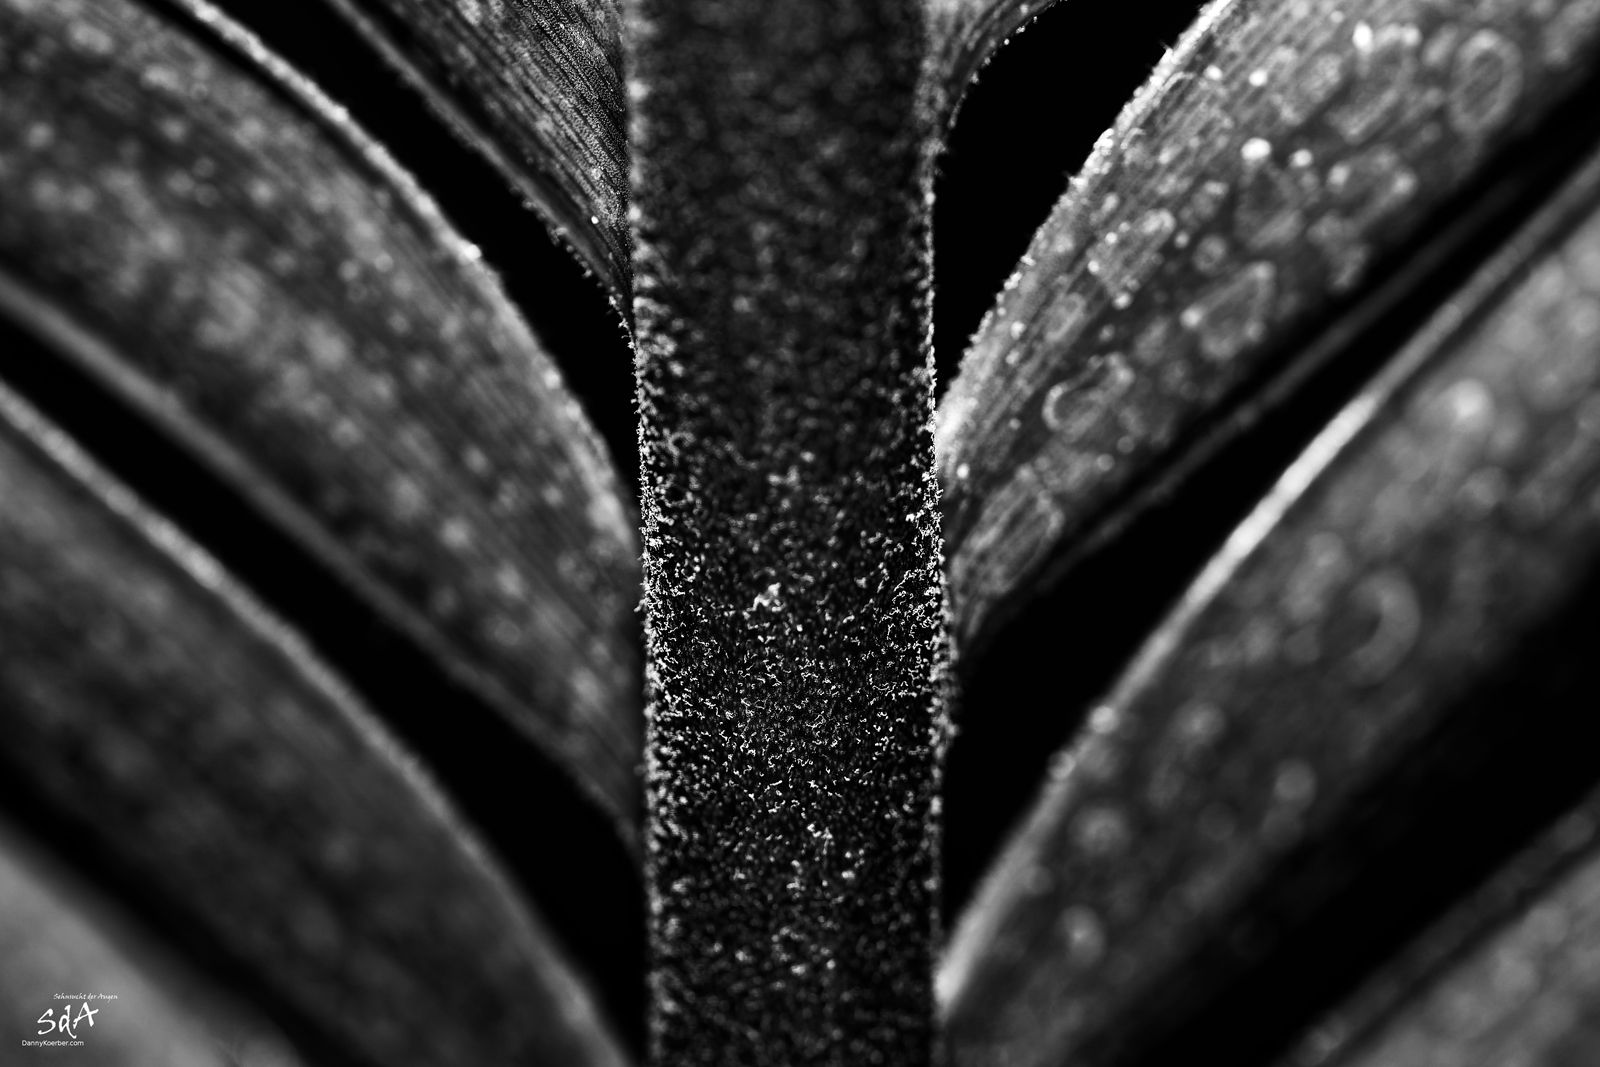 Palmenblatt in schwarz weiß, fotografiert für Pflanzen von Danny Koerber für Sehnsucht der Augen.